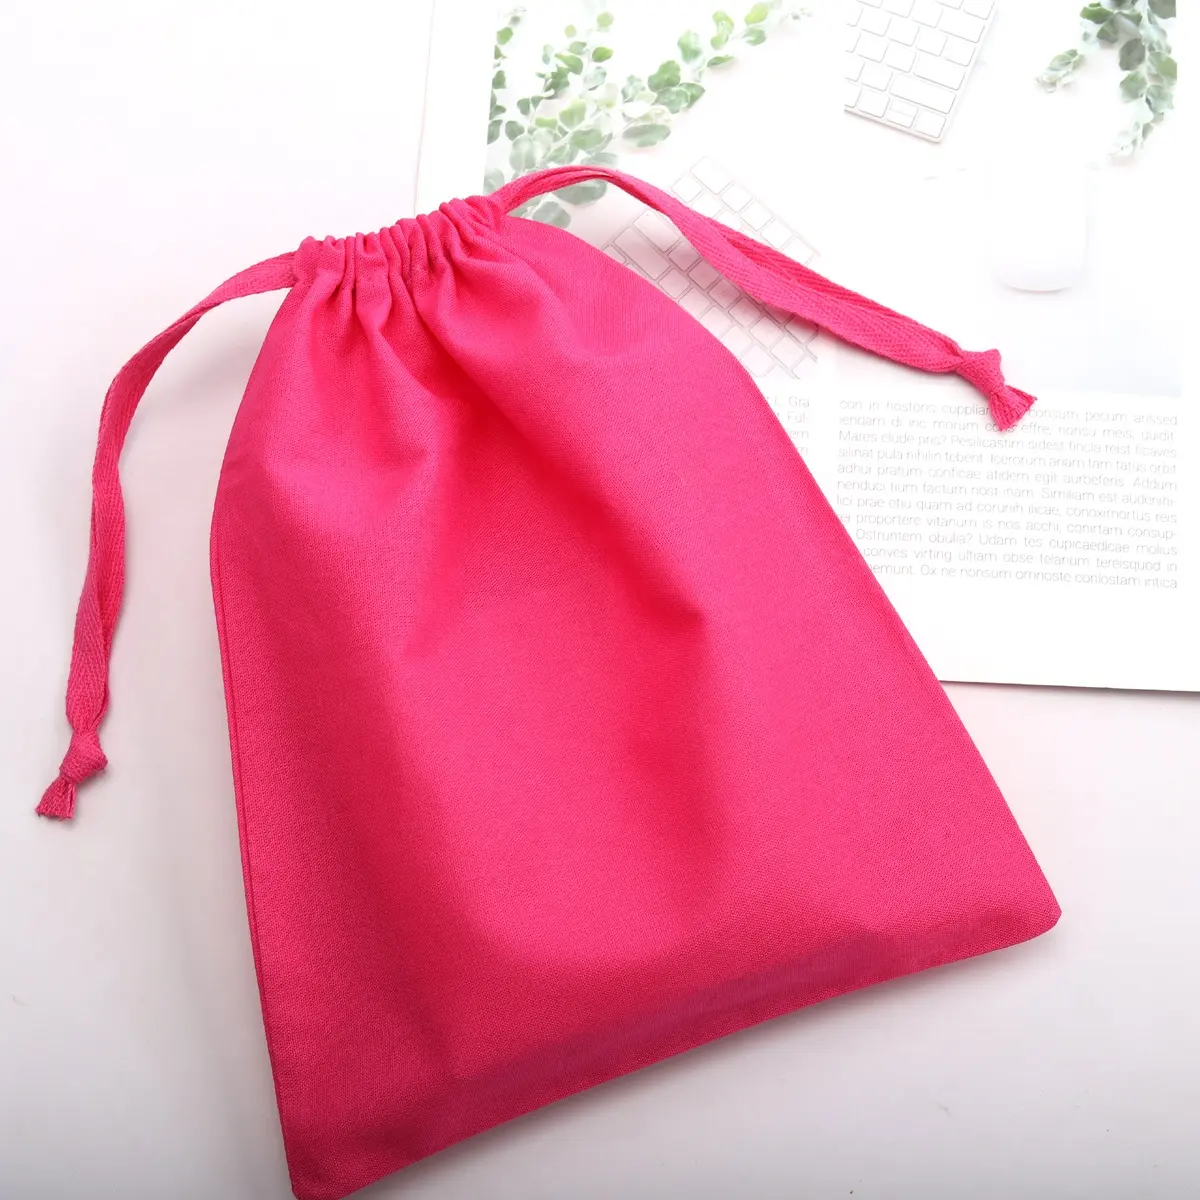 Bolsa de polvo de lino de algodón rojo rosa reutilizable para el cuidado de la piel, bolsa de maquillaje de regalo de algodón de muselina con cordón de lujo